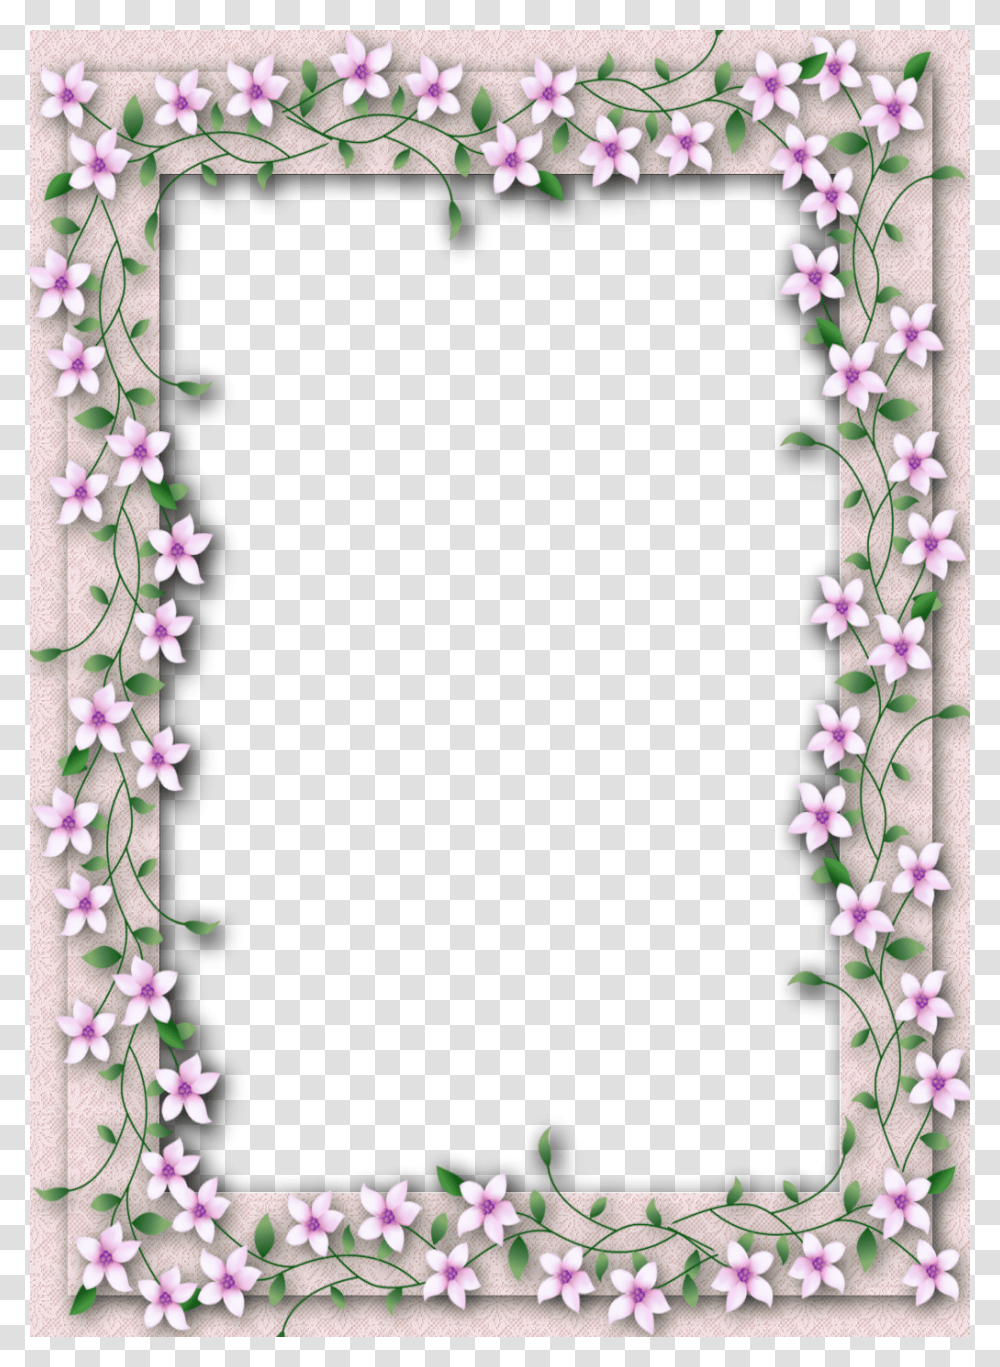 Floral Frame, Flower, Plant, Blossom, Gate Transparent Png